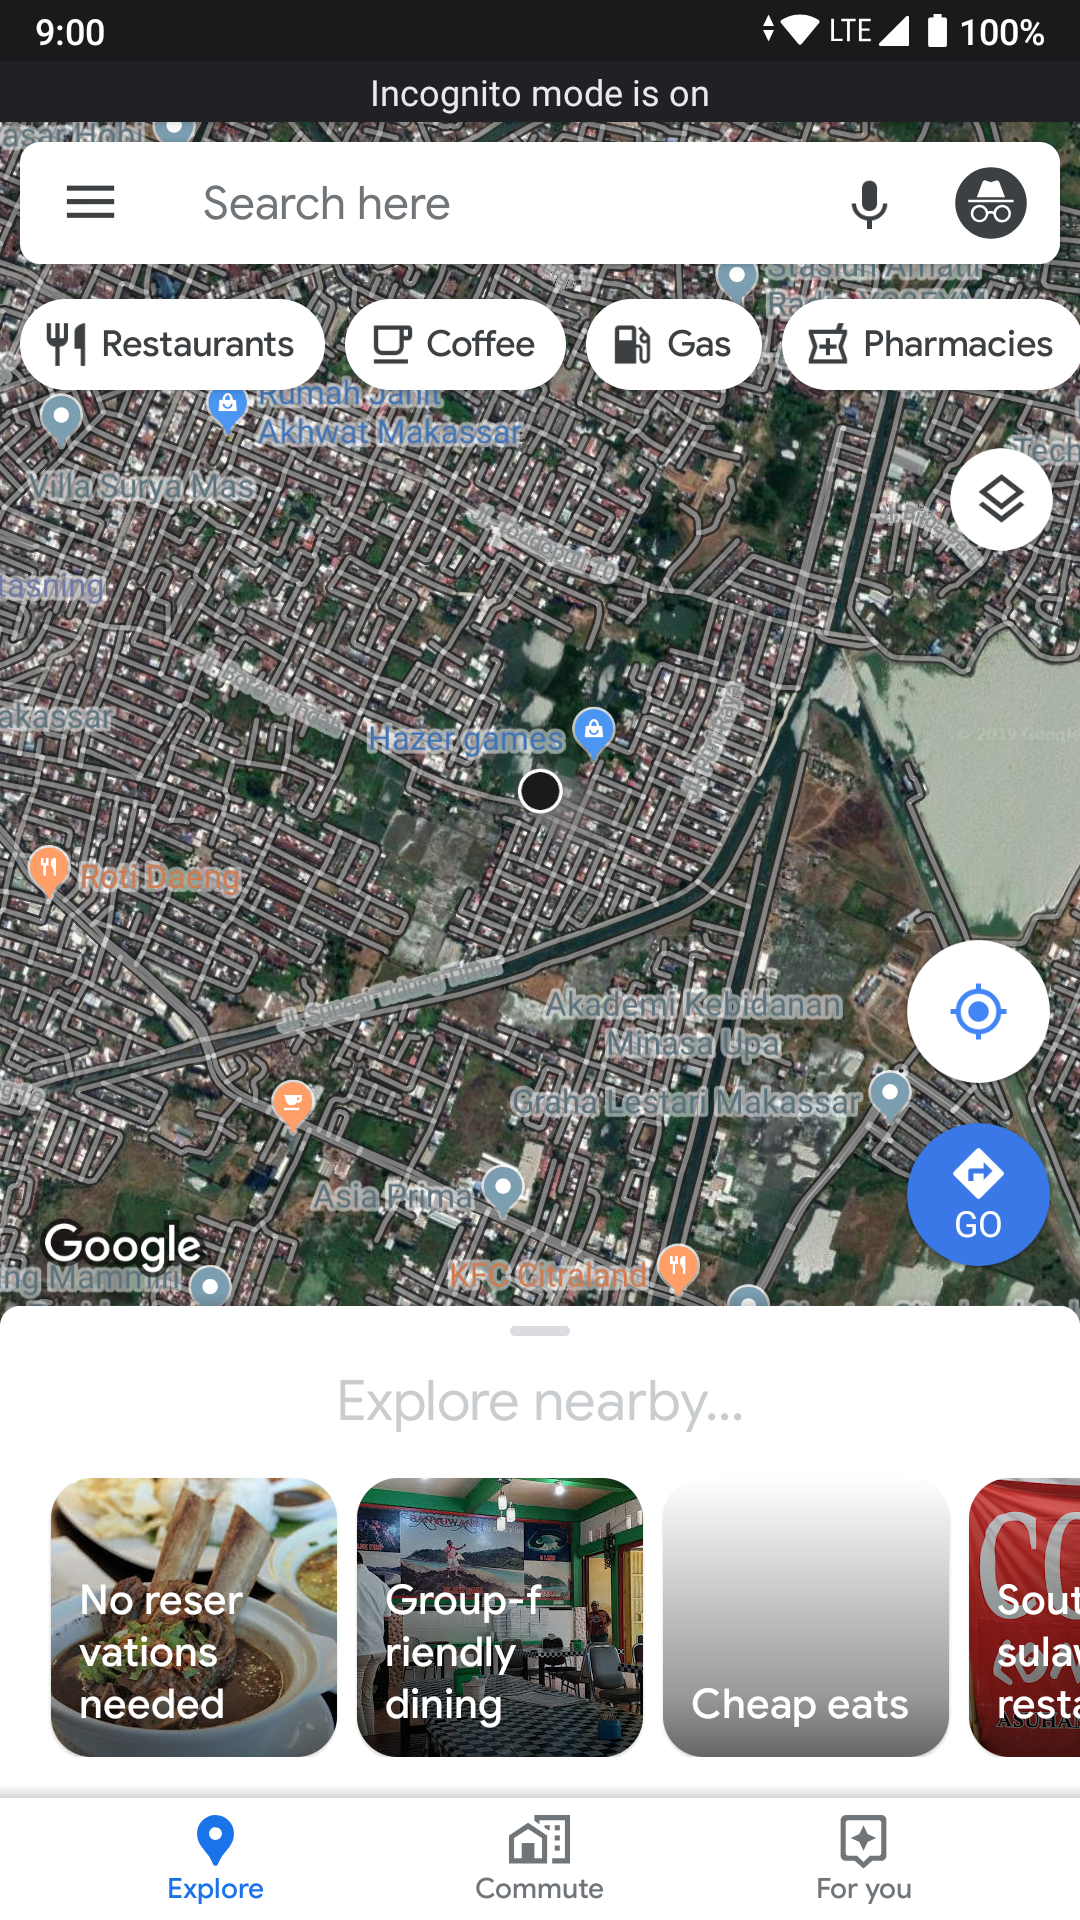 Google Maps - Incognito